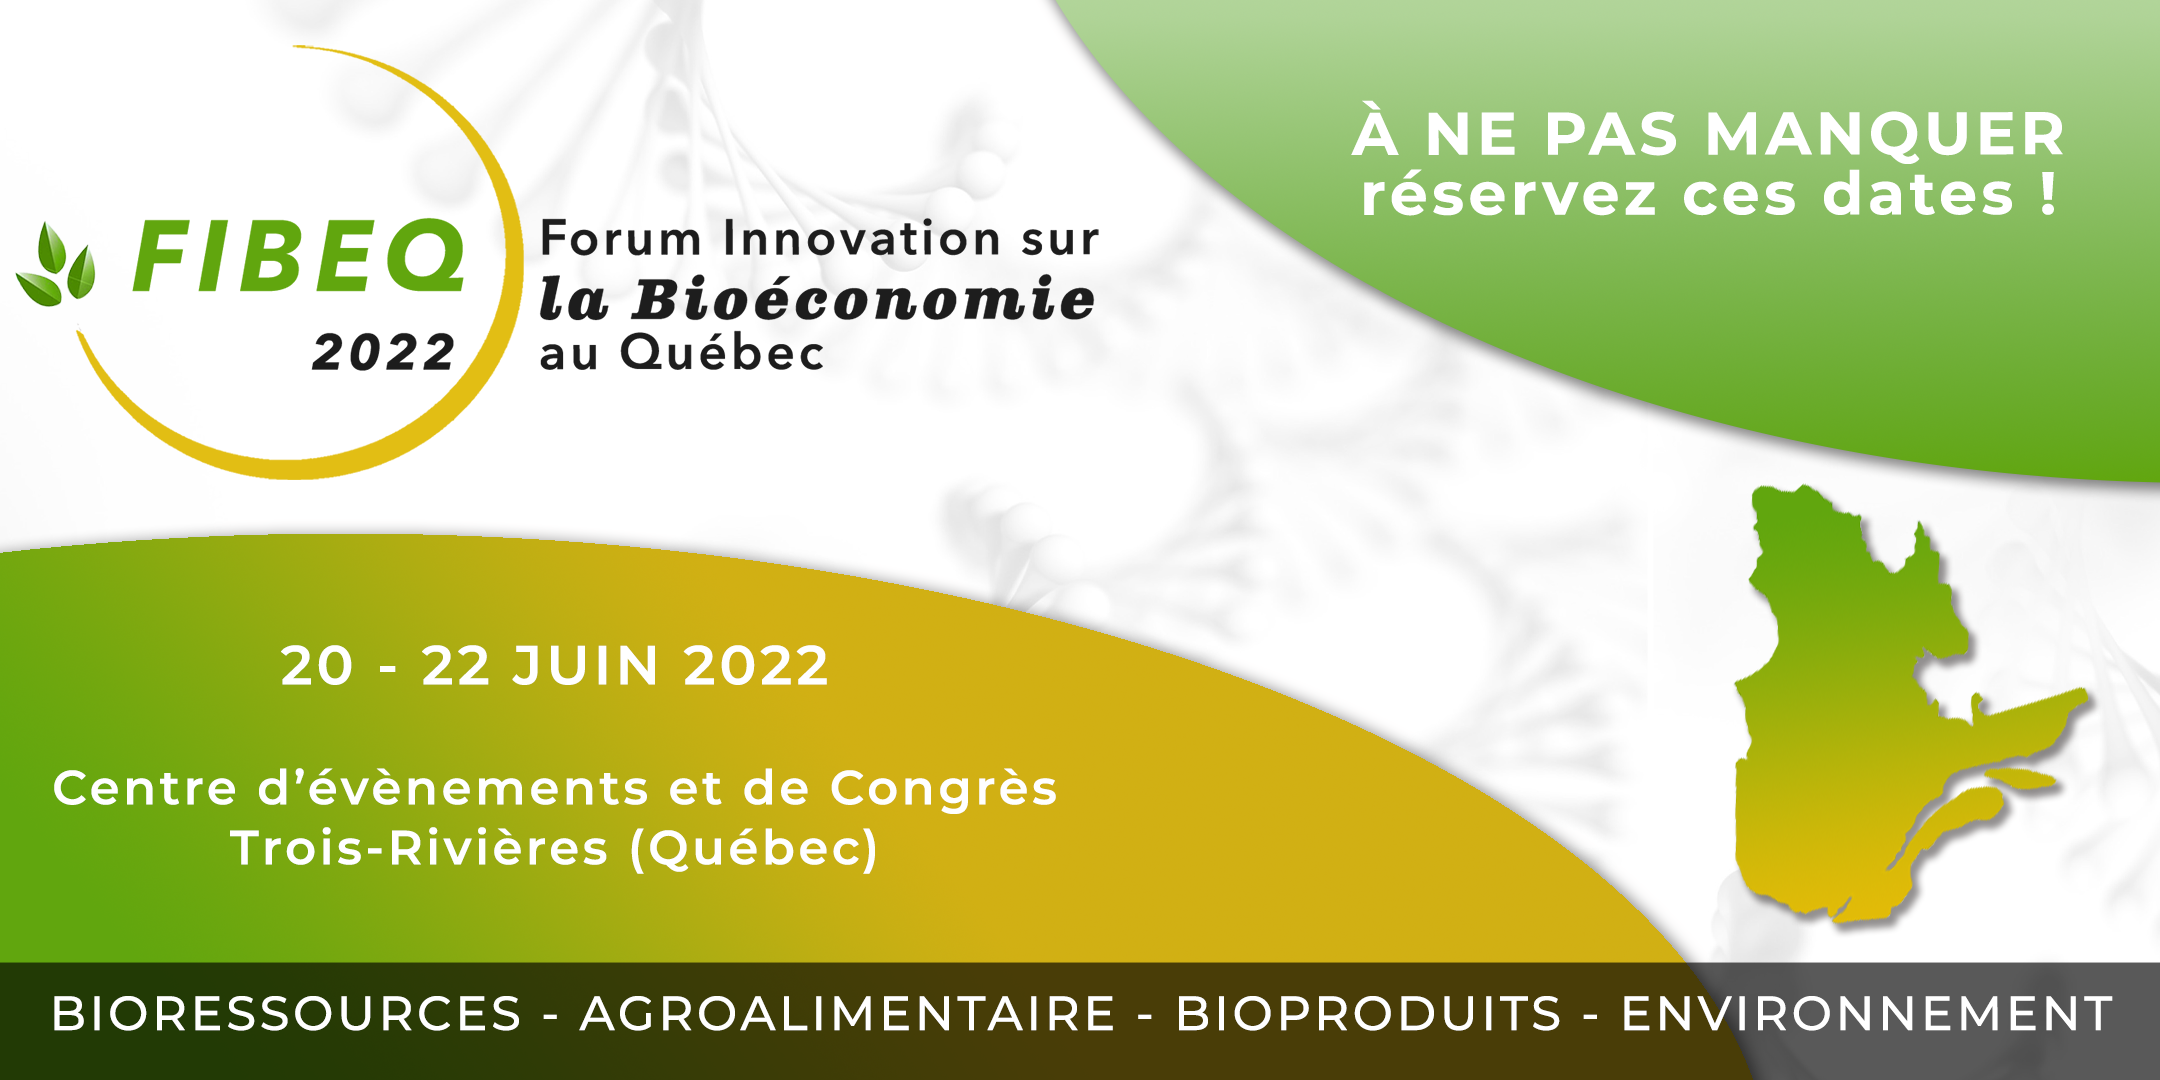 Deuxième édition du Forum Innovation sur la Bioéconomie au Québec – FIBEQ 2022